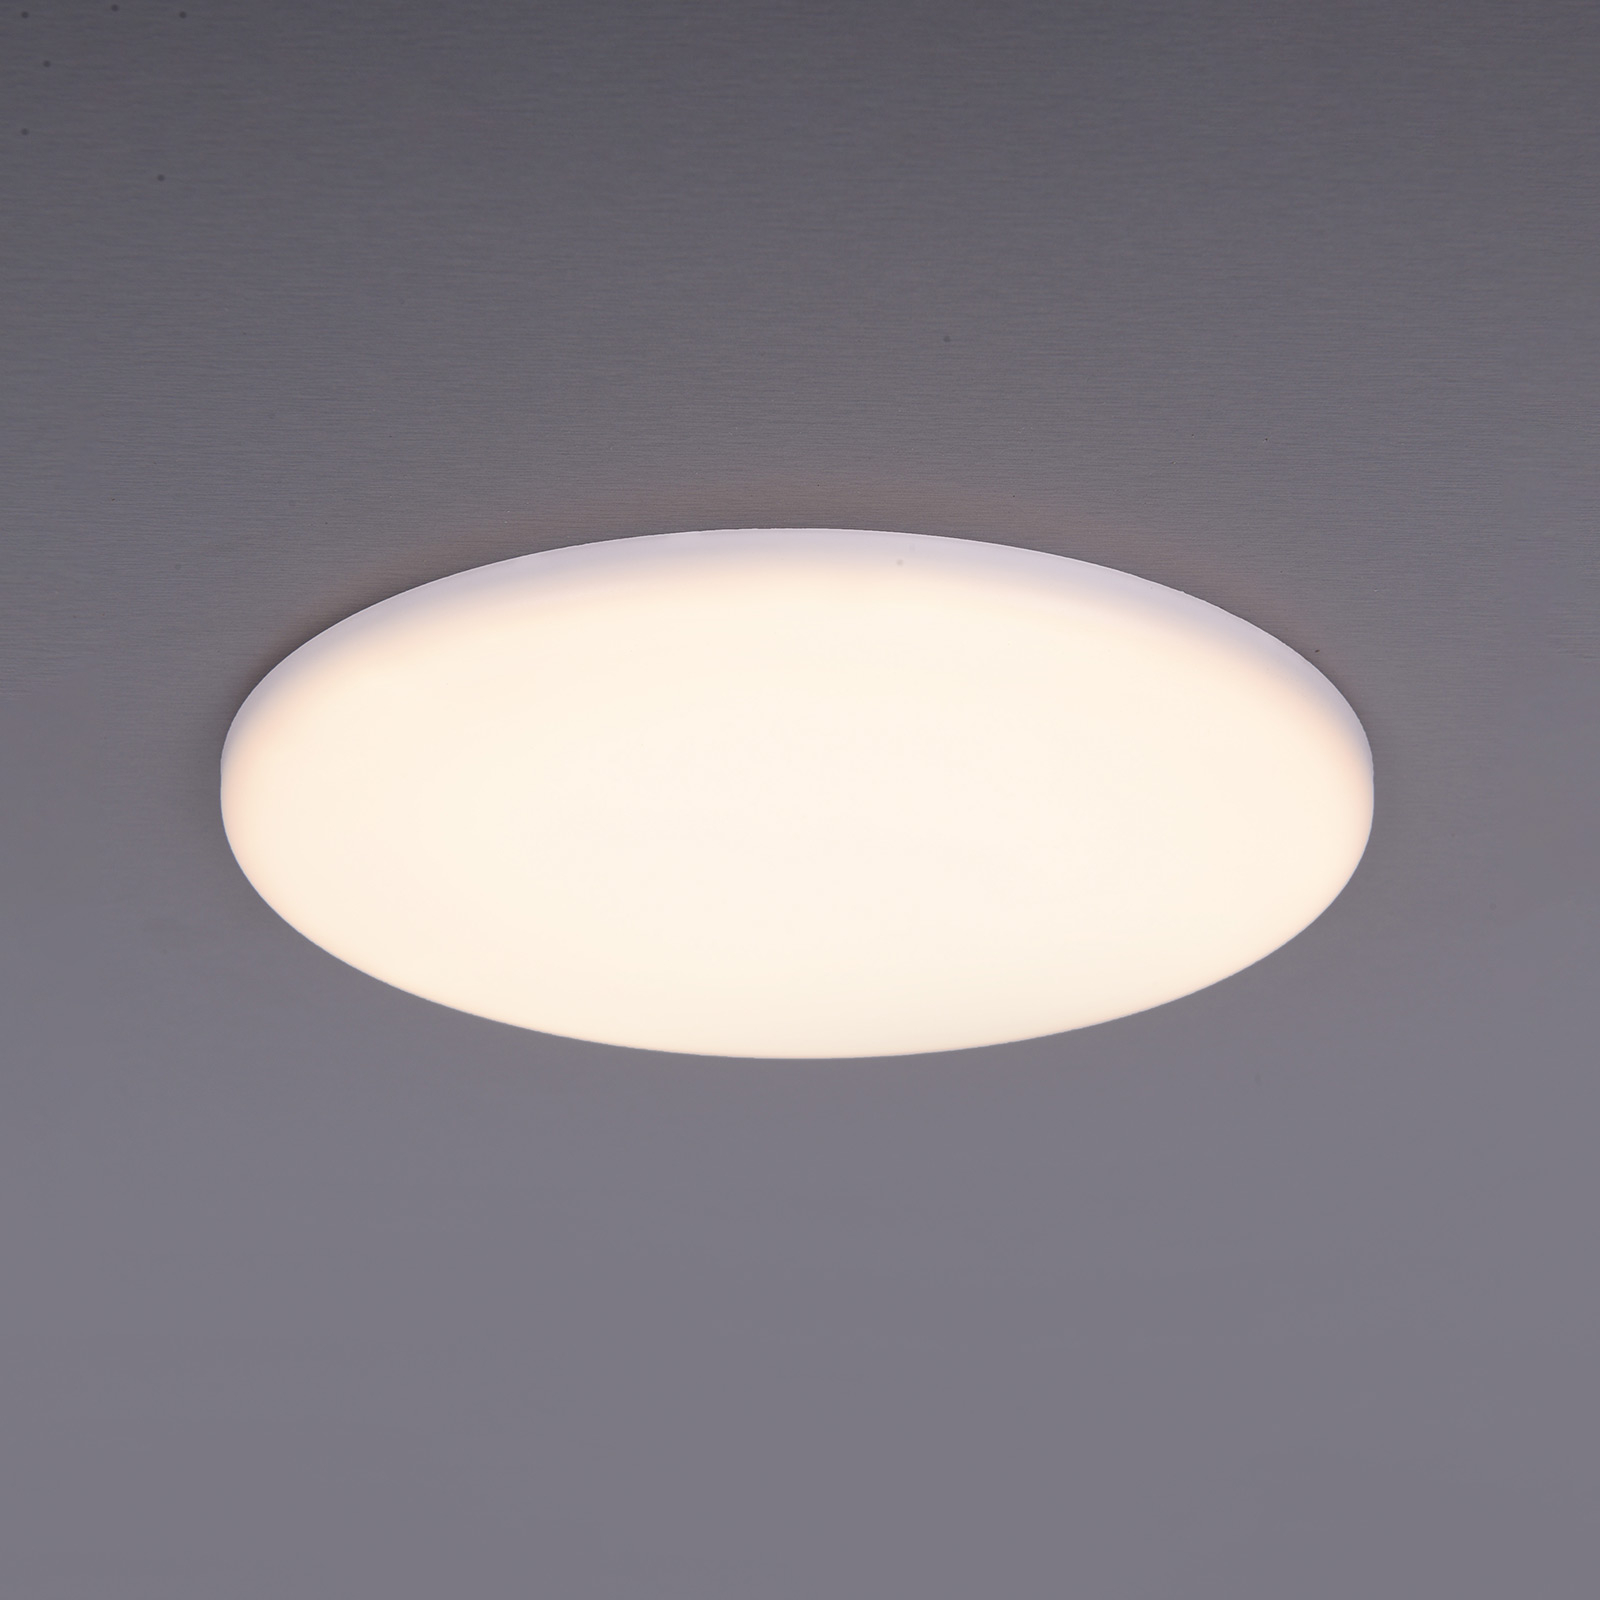 LED-uppovalaisin Sula, pyöreä, IP66, Ø 15,5 cm